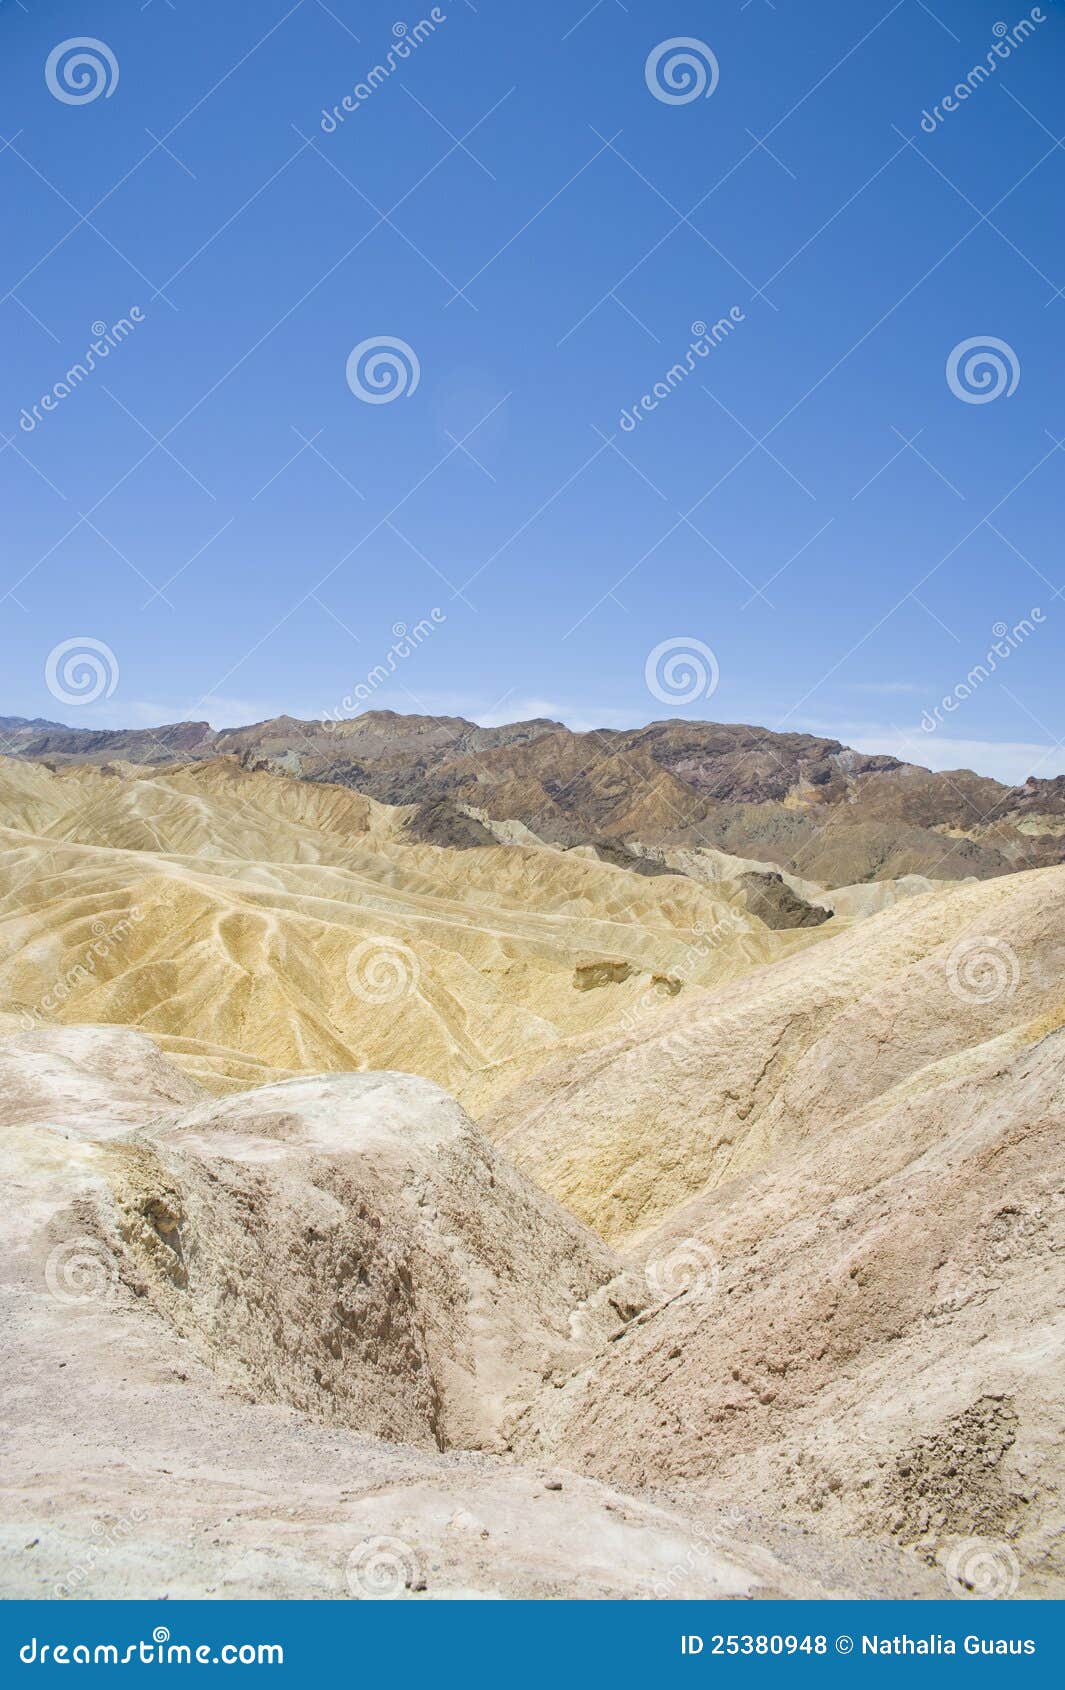 terrestre cosmogenic-nuclide datazione di tifosi alluvionali in Death Valley California nigeriani incontri militari truffe